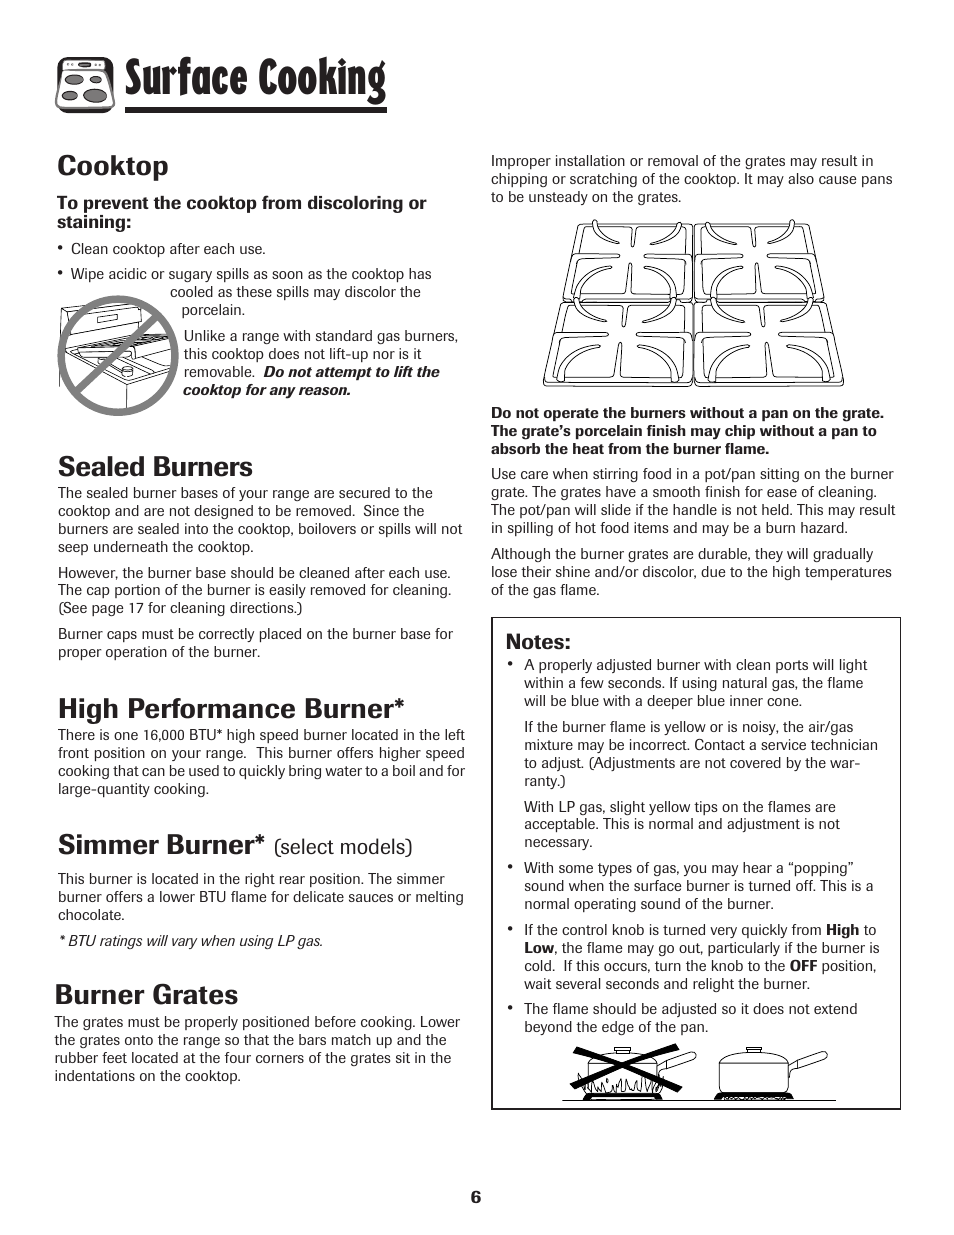 Surface cooking, Cooktop, Sealed burners | High performance burner, Simmer burner, Burner grates | Maytag MGR6751BDW User Manual | Page 7 / 76